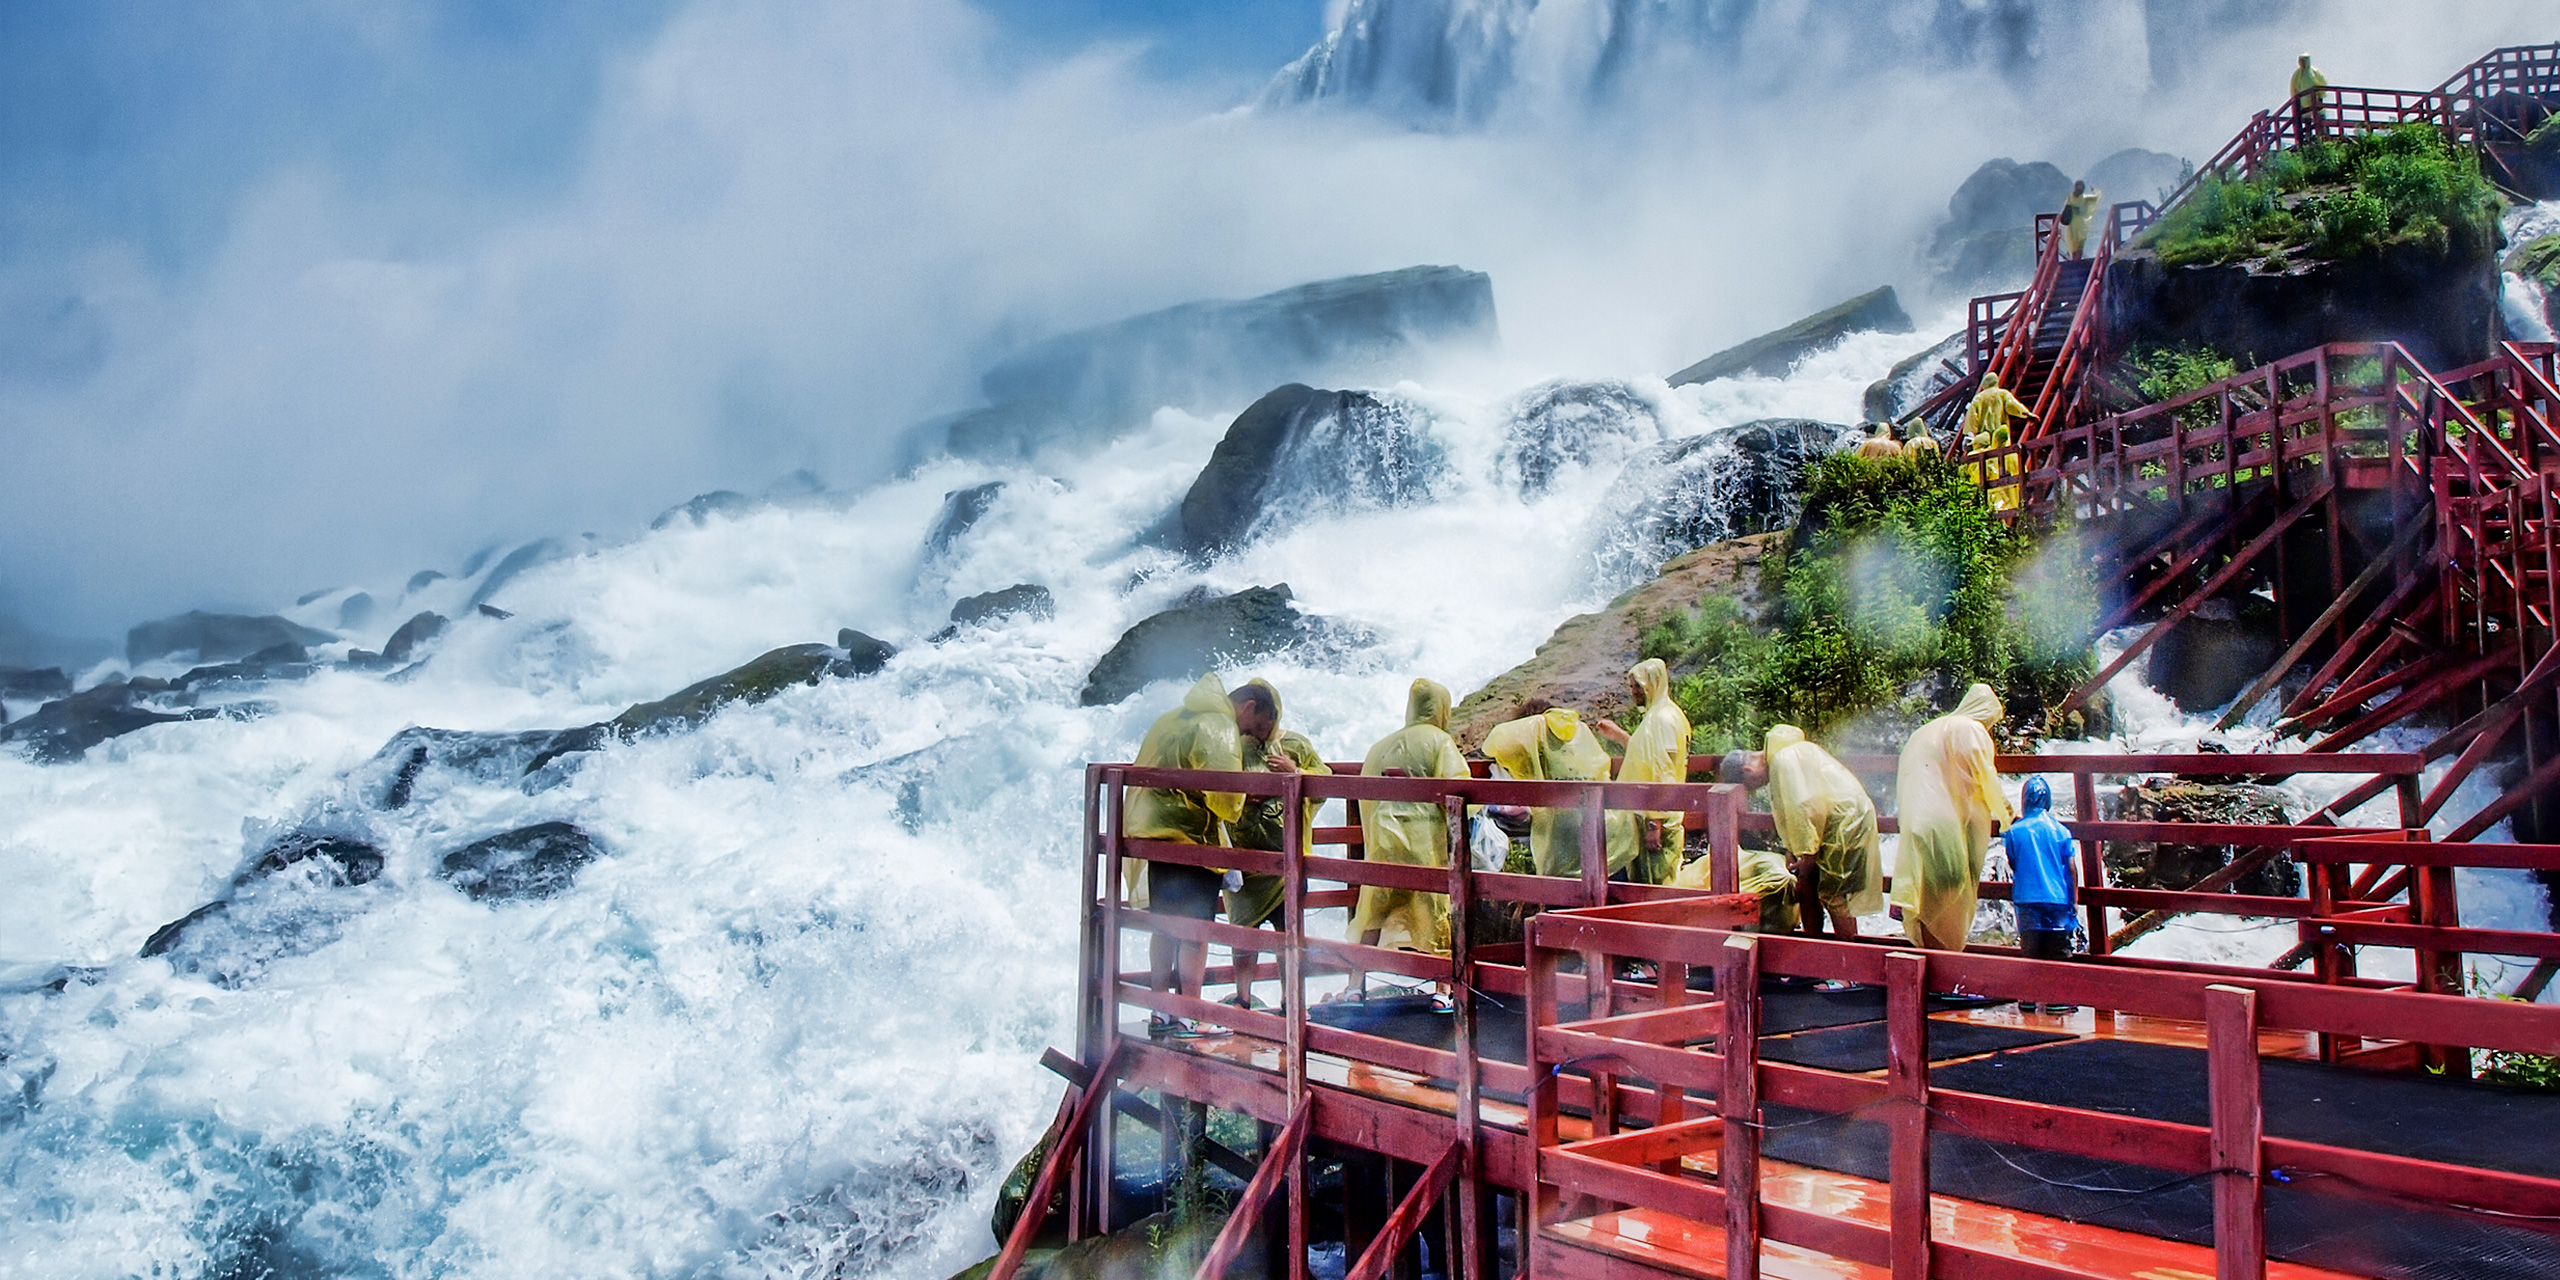 Visitors at Niagara falls; Courtesy Lidiia Kozhevnikova/Shutterstock